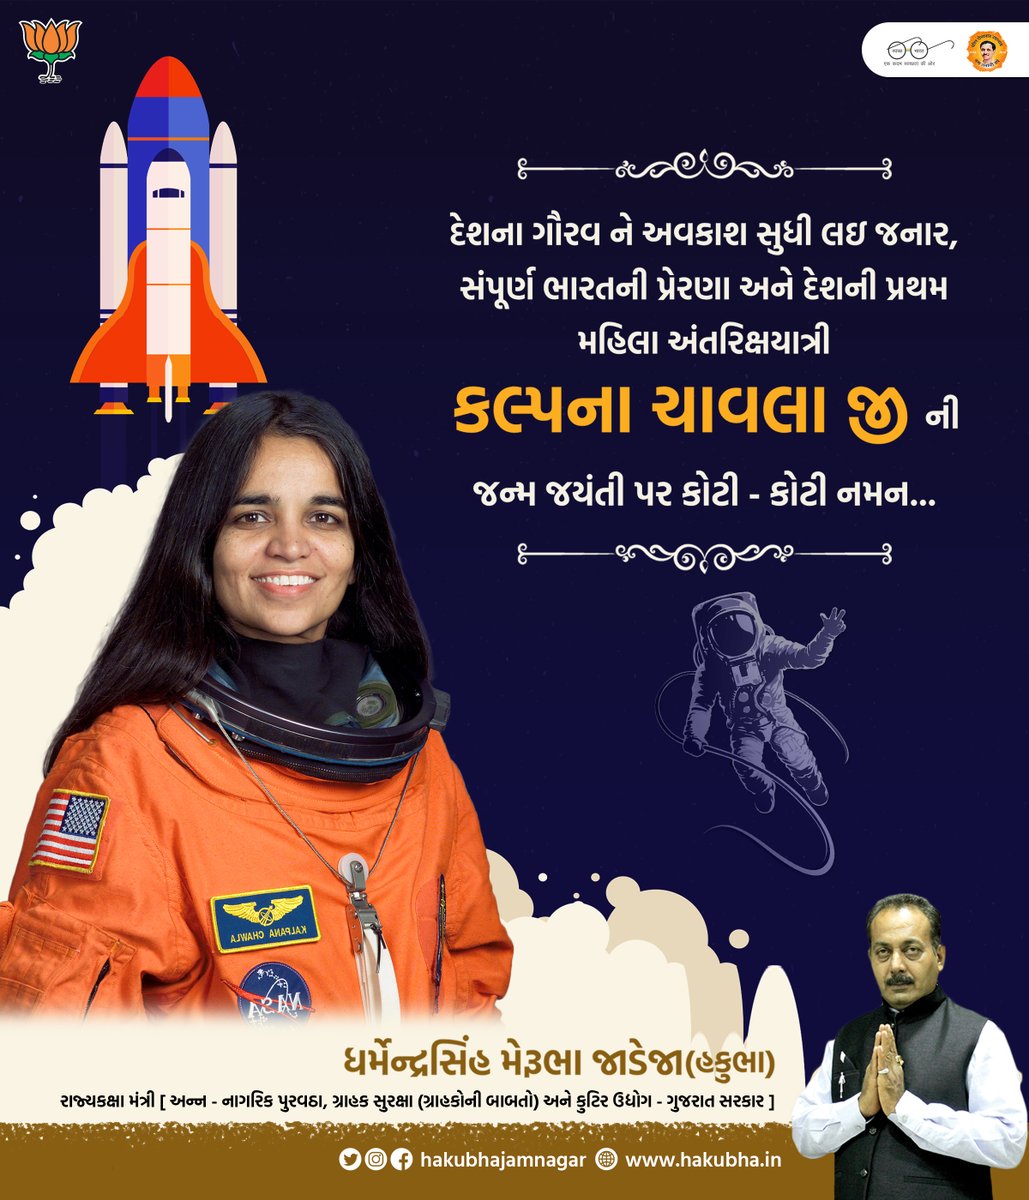 દેશના ગૌરવને અવકાશ સુધી લઇ જનાર, સંપૂર્ણ ભારતની પ્રેરણા અને દેશની પ્રથમ મહિલા અંતરિક્ષયાત્રી કલ્પના ચાવલા જી ની જન્મ જયંતી પર કોટી કોટી નમન ... #kalpanachawla